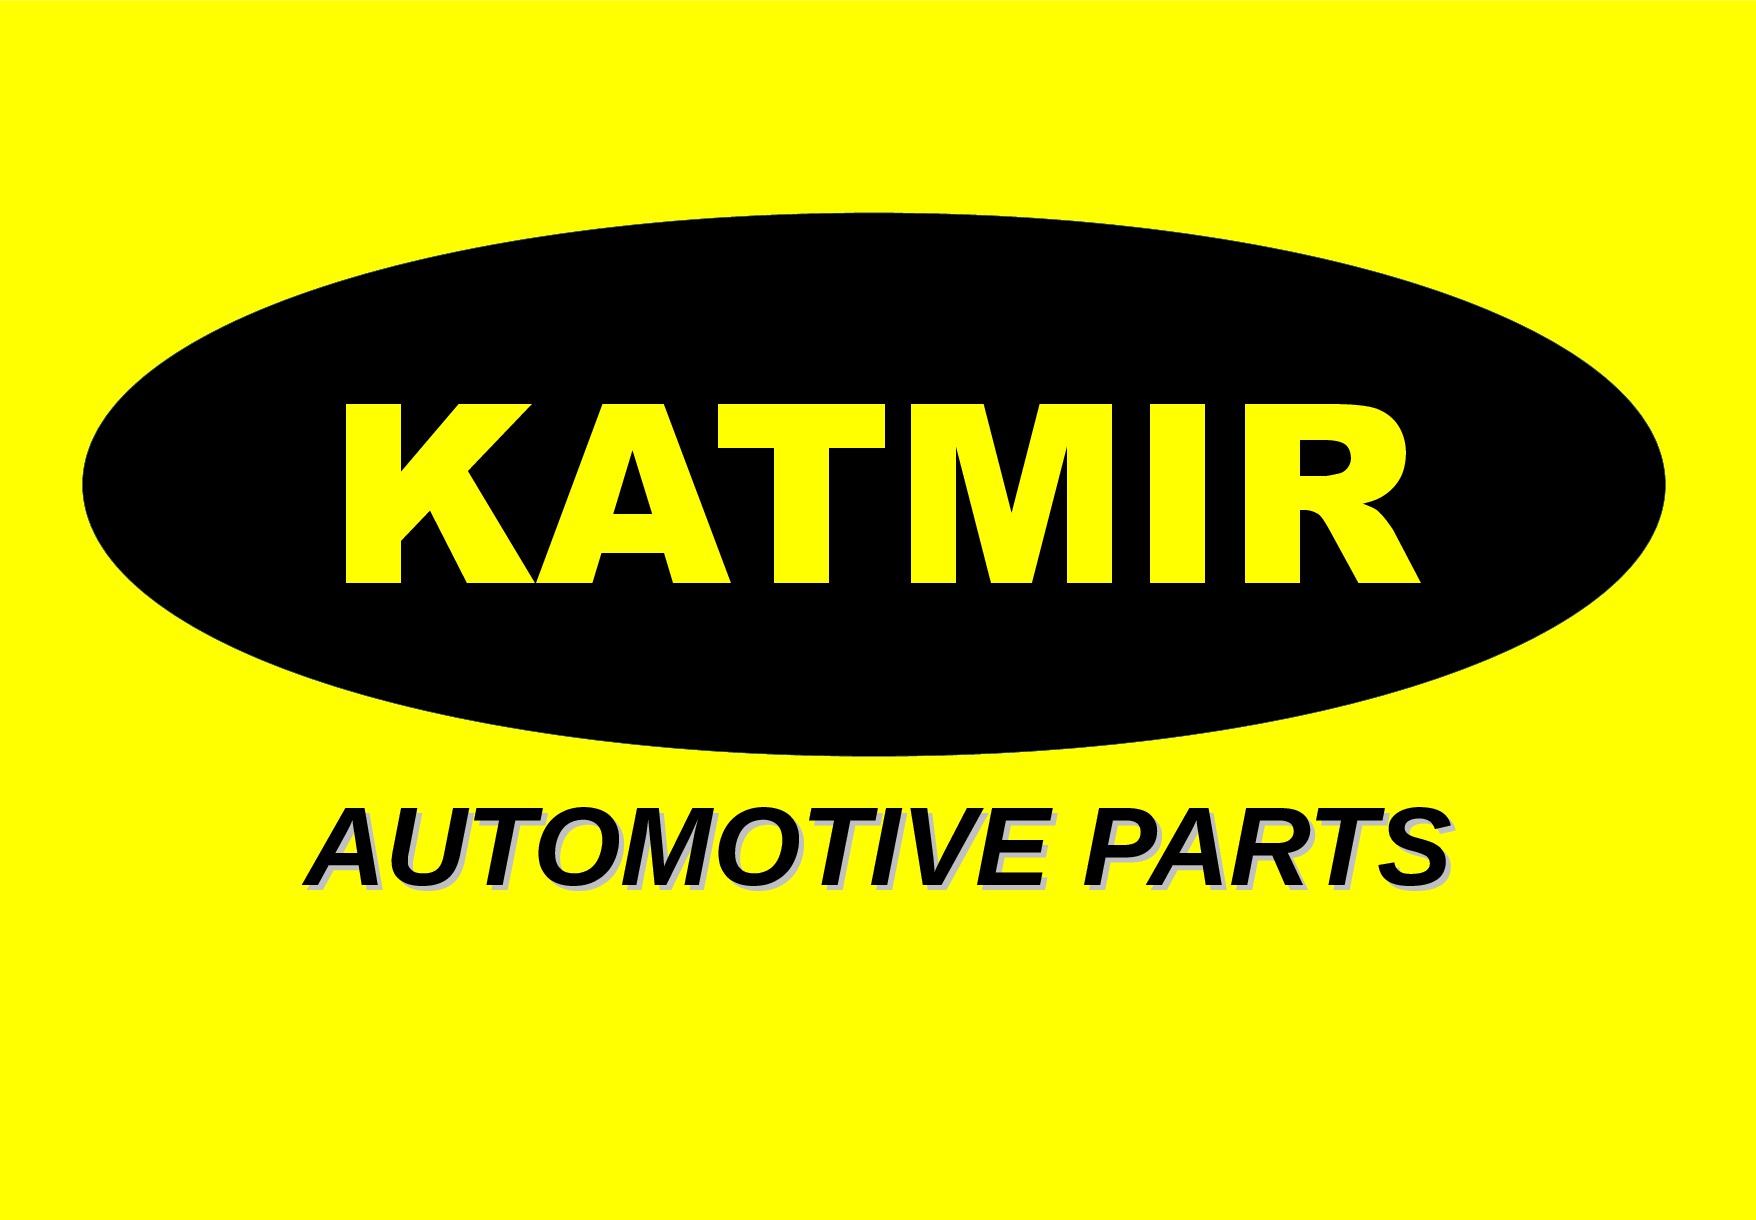 KATMIR AUTOMOTIVE PARTS  RICAMBI E PRODOTTI PER AUTO-Your Sub Title Here